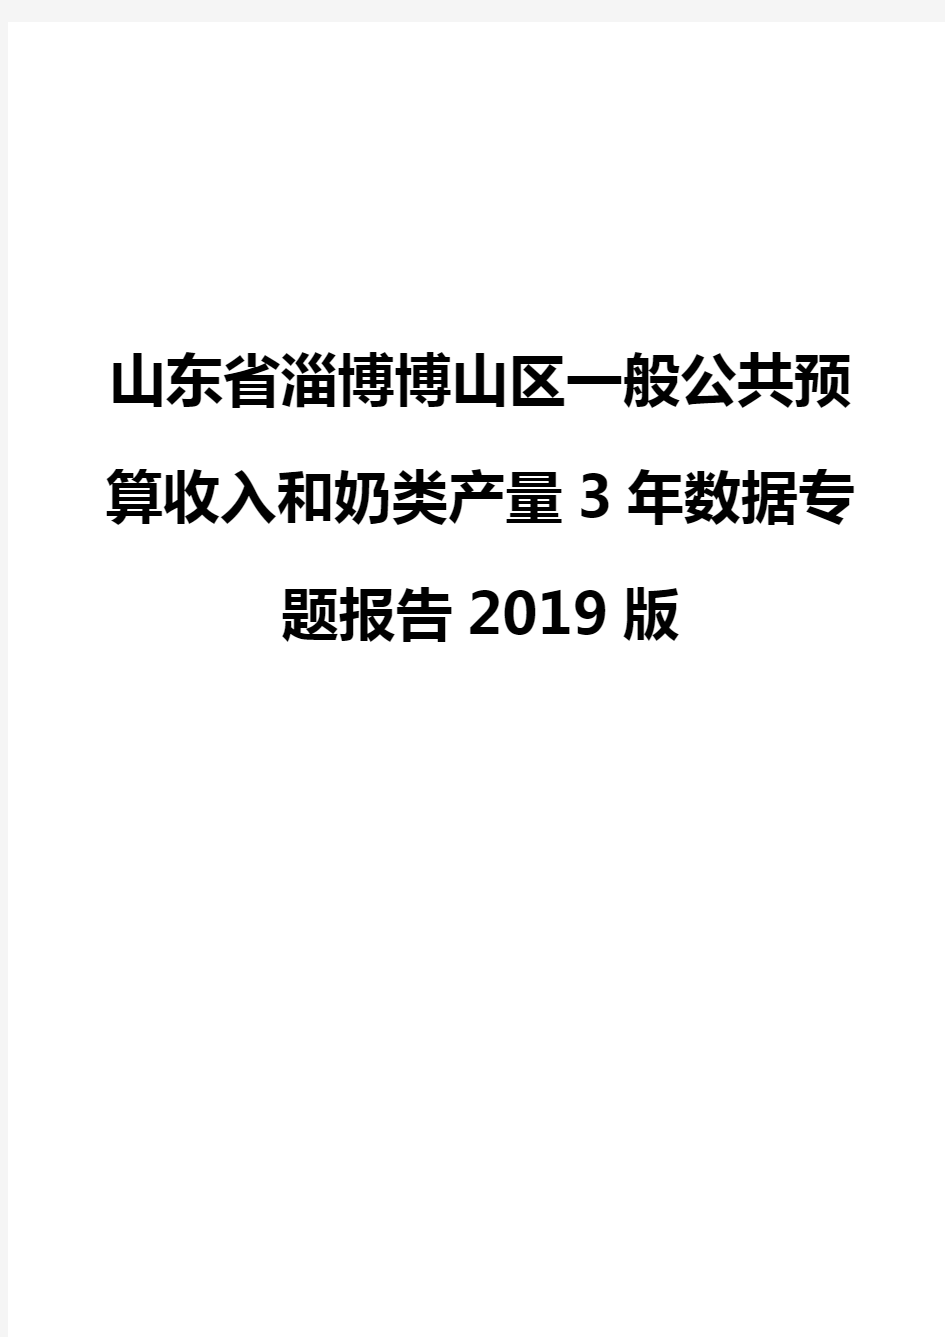 山东省淄博博山区一般公共预算收入和奶类产量3年数据专题报告2019版